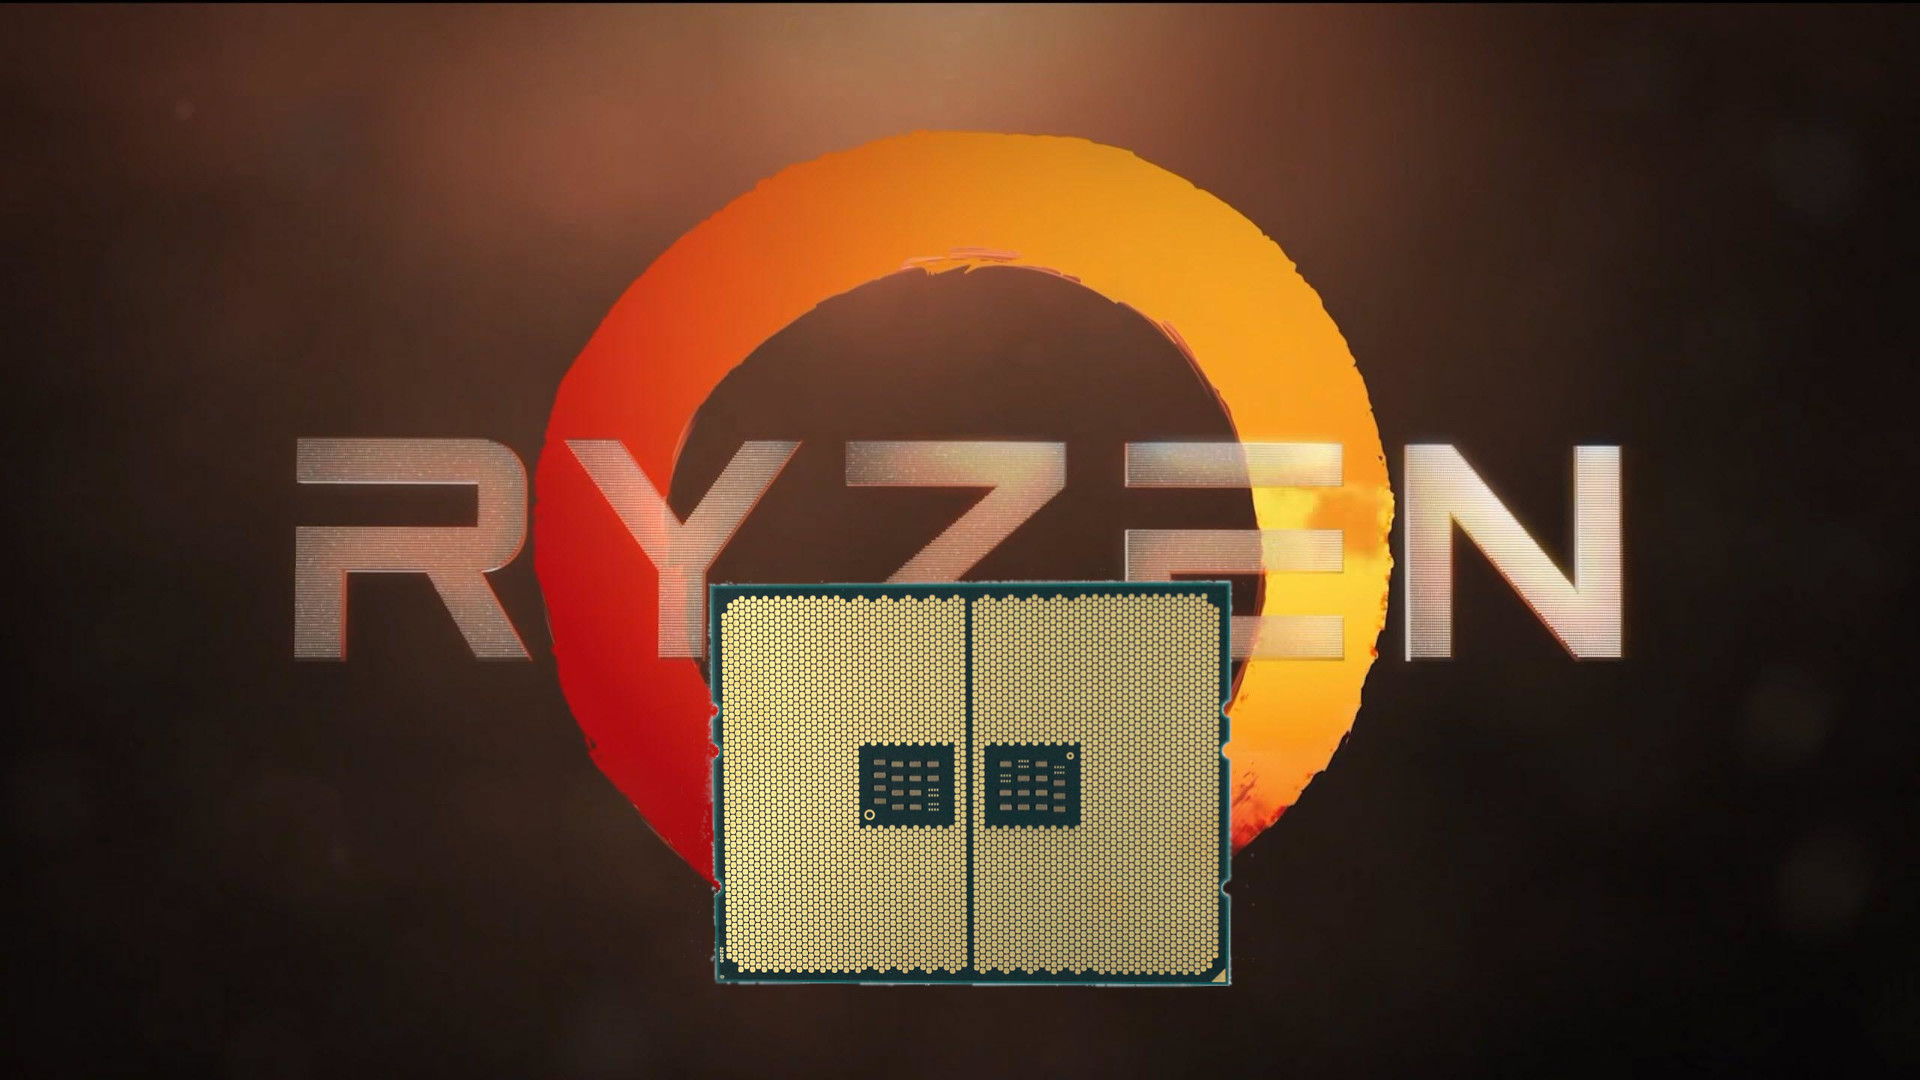 Az AMD asztali vonaln beksznt az LGA tokozs.